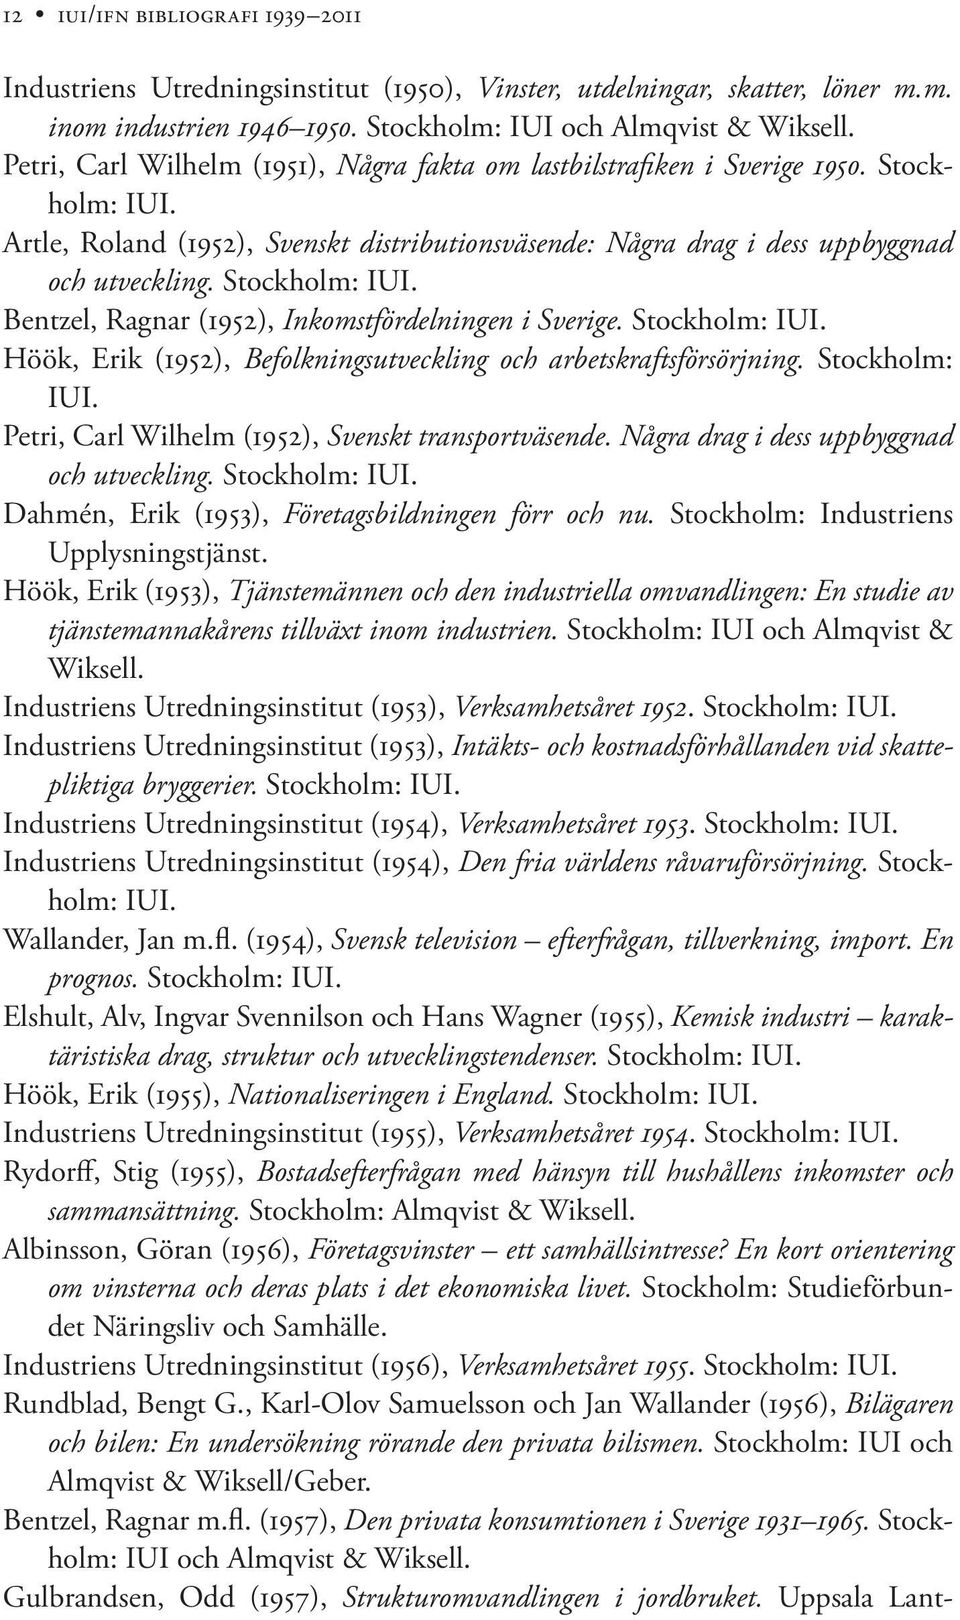 Stockholm: IUI. Bentzel, Ragnar (1952), Inkomstfördelningen i Sverige. Stockholm: IUI. Höök, Erik (1952), Befolkningsutveckling och arbetskraftsförsörjning. Stockholm: IUI. Petri, Carl Wilhelm (1952), Svenskt transportväsende.